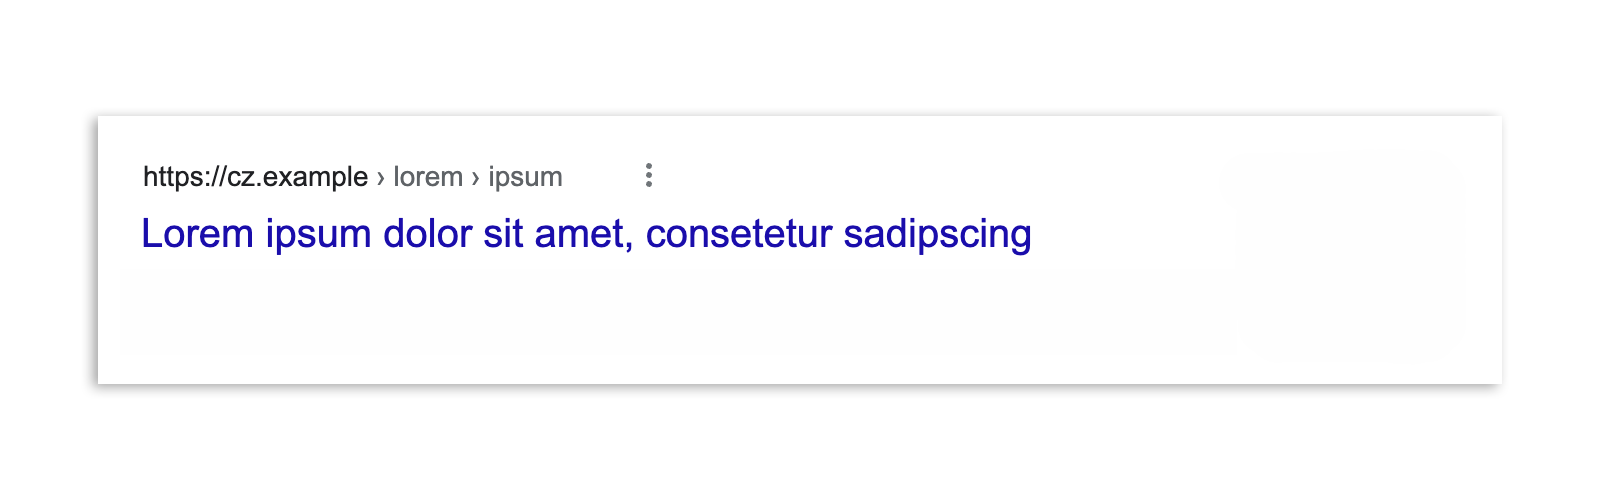 Un risultato della Ricerca Google in Repubblica Ceca dopo l'attuazione della legge, che mostra solo il titolo dell'articolo e l'URL.